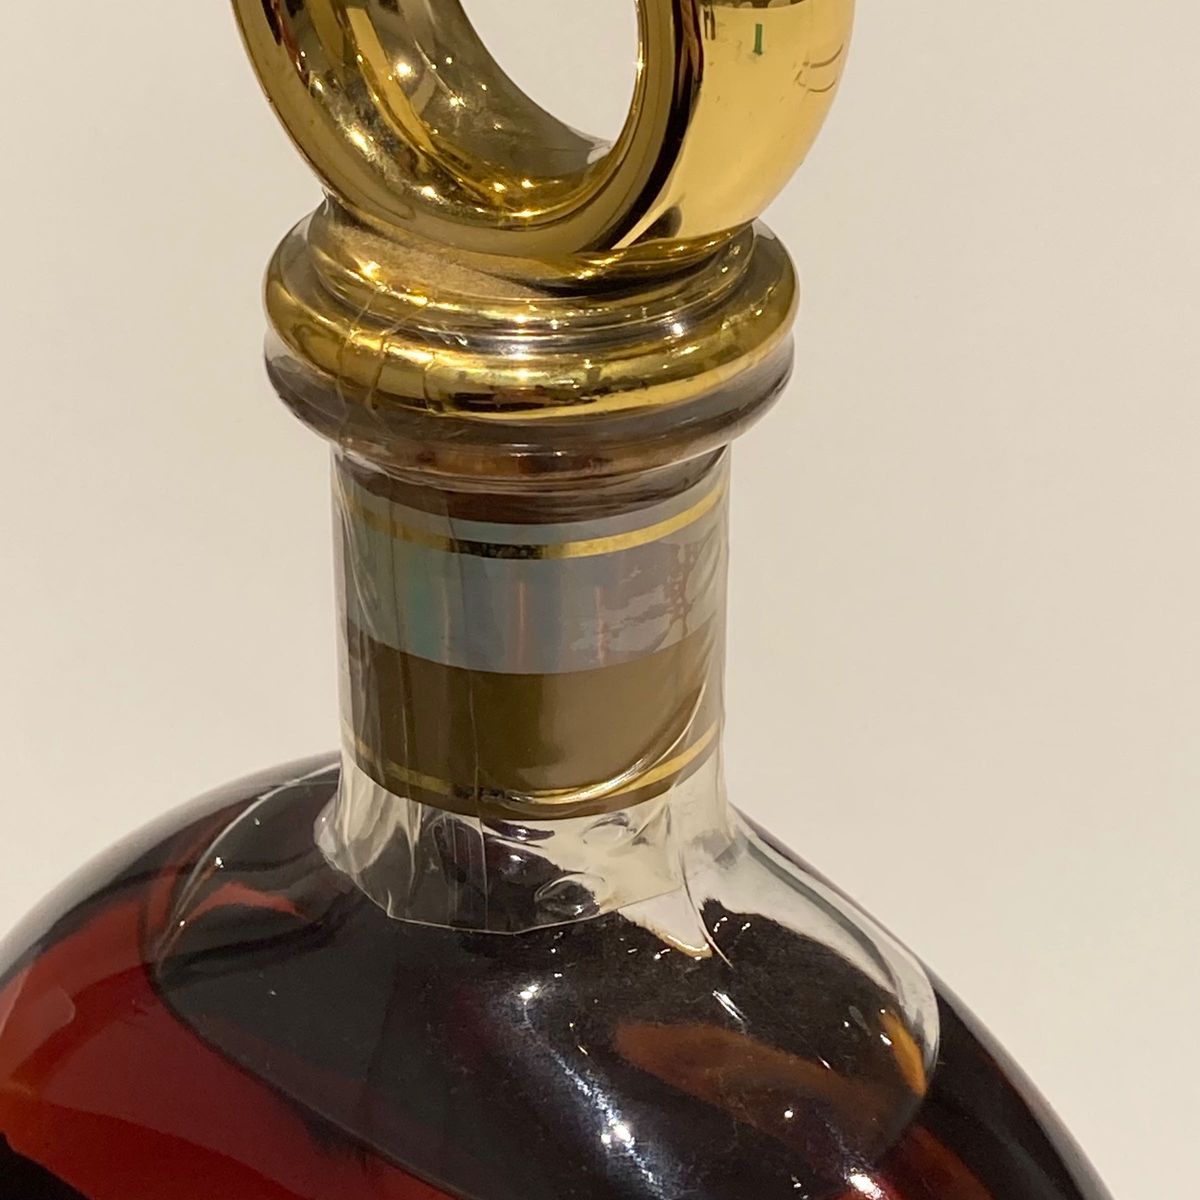 古酒 ブランデー RENAULT VSOP Cognac 700ml コニャック フランス